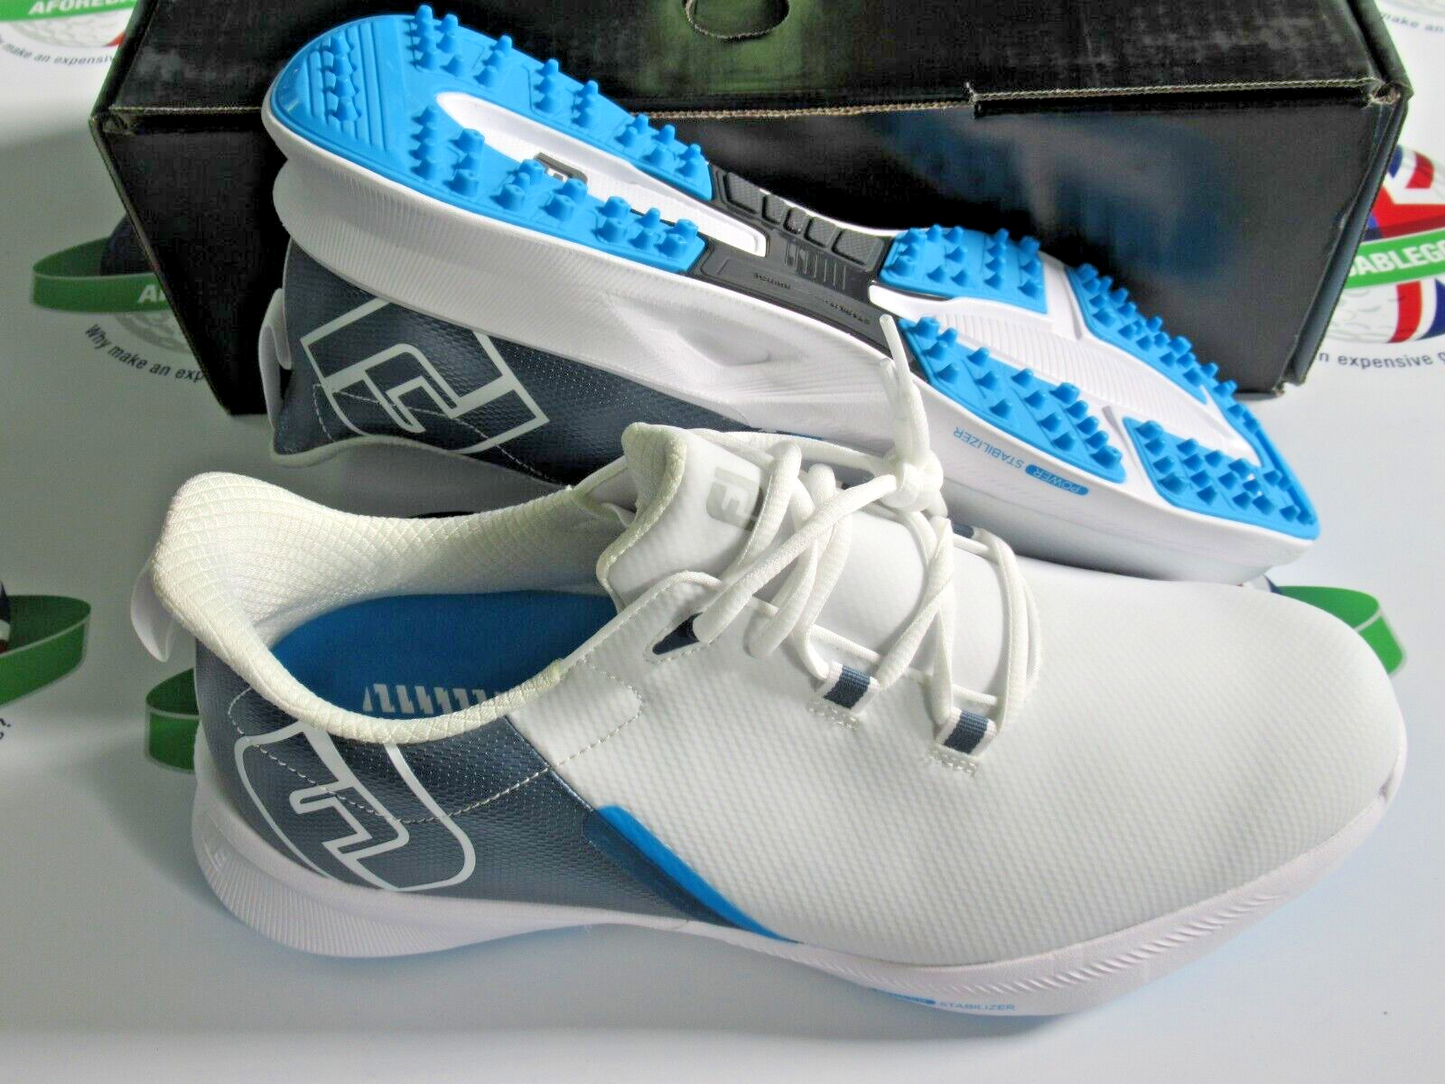 footjoy fuel sport waterproof golf shoes 55455k white/silver/blue 9 medium